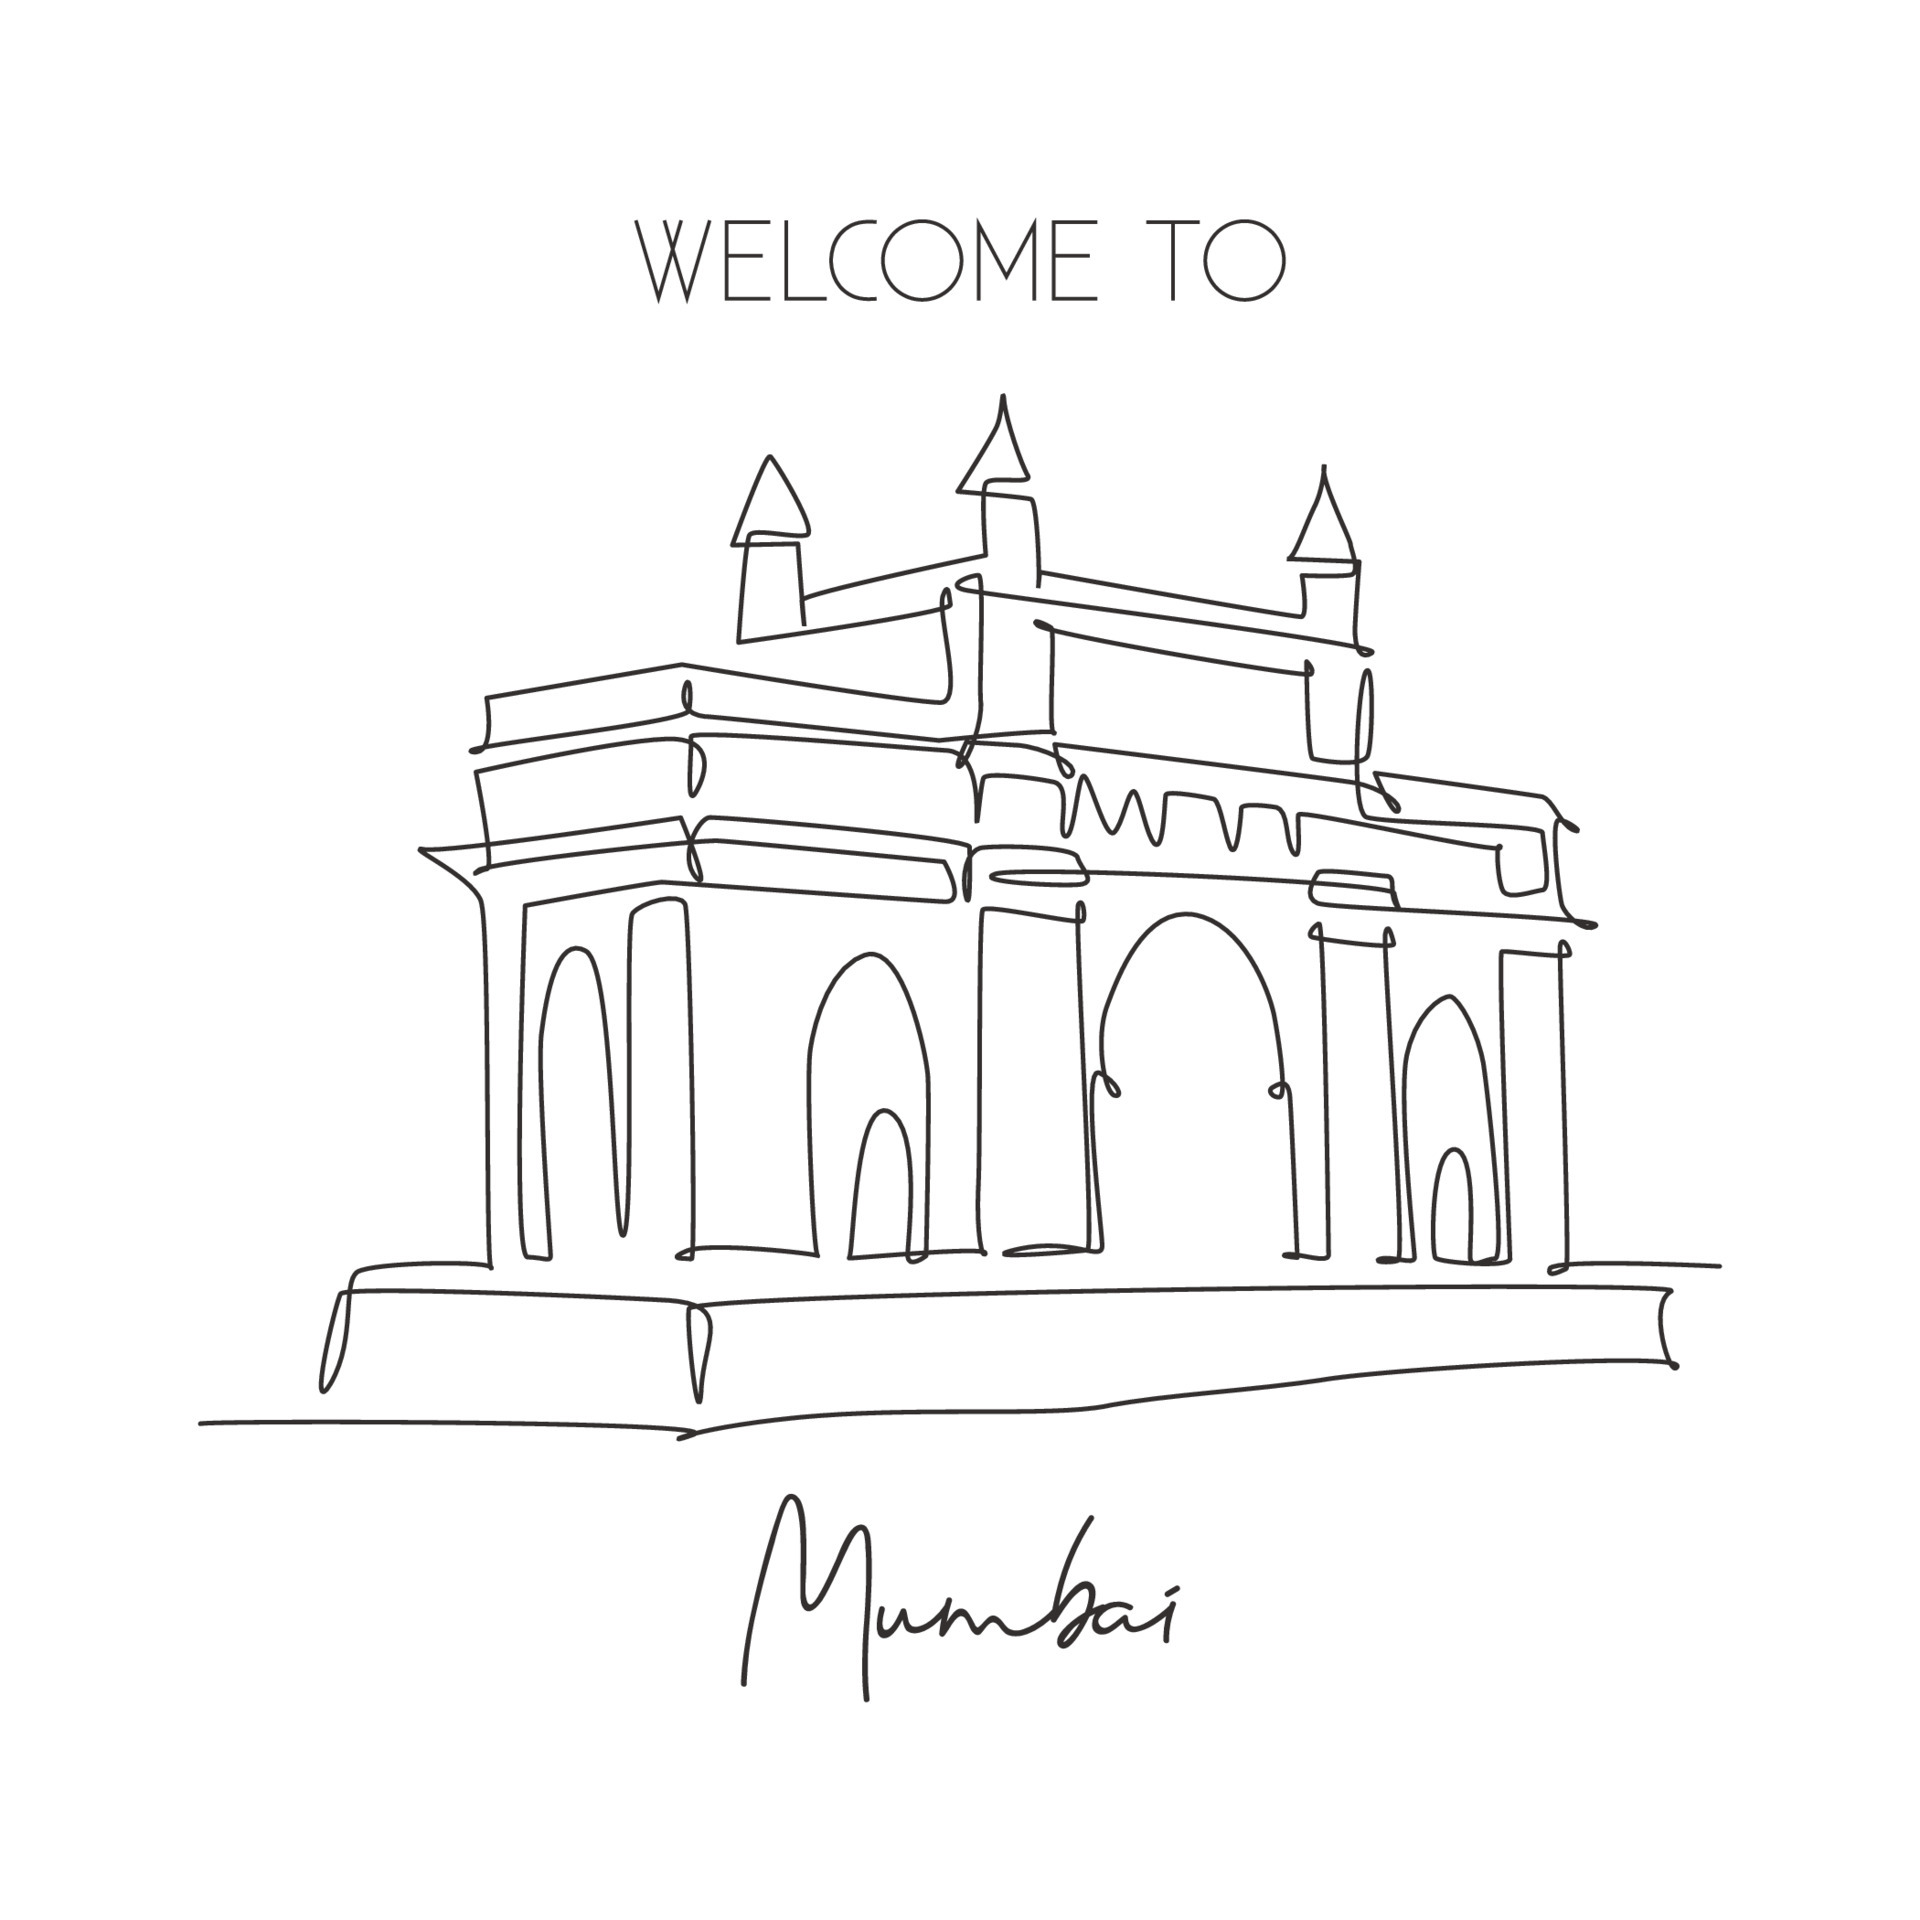 Mumbai Drawings for Sale - Pixels